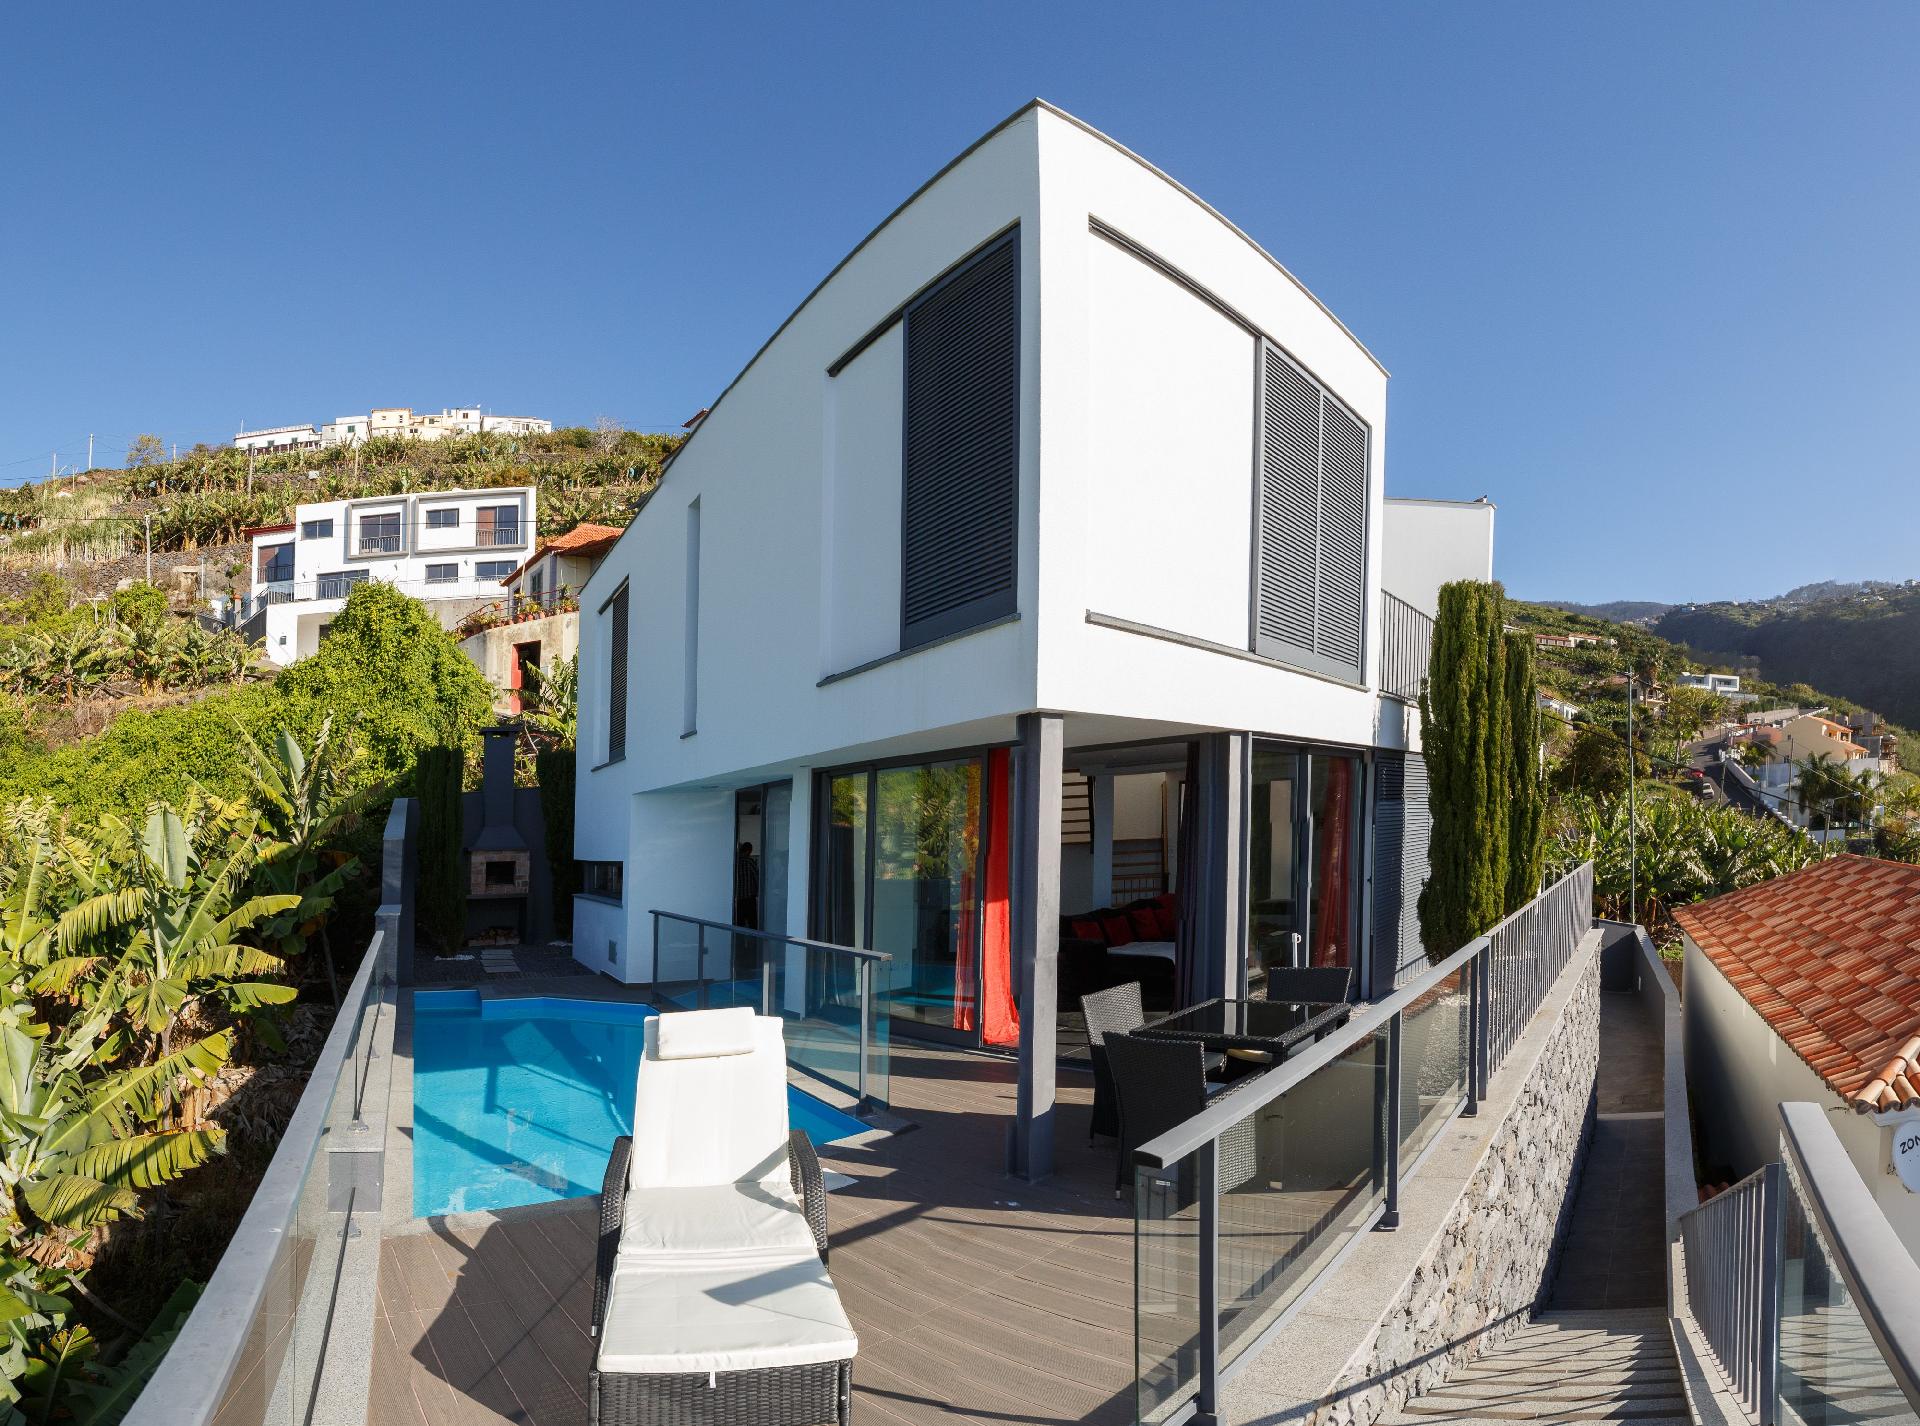 Ferienhaus mit Privatpool für 4 Personen  + 2 Ferienhaus auf Madeira